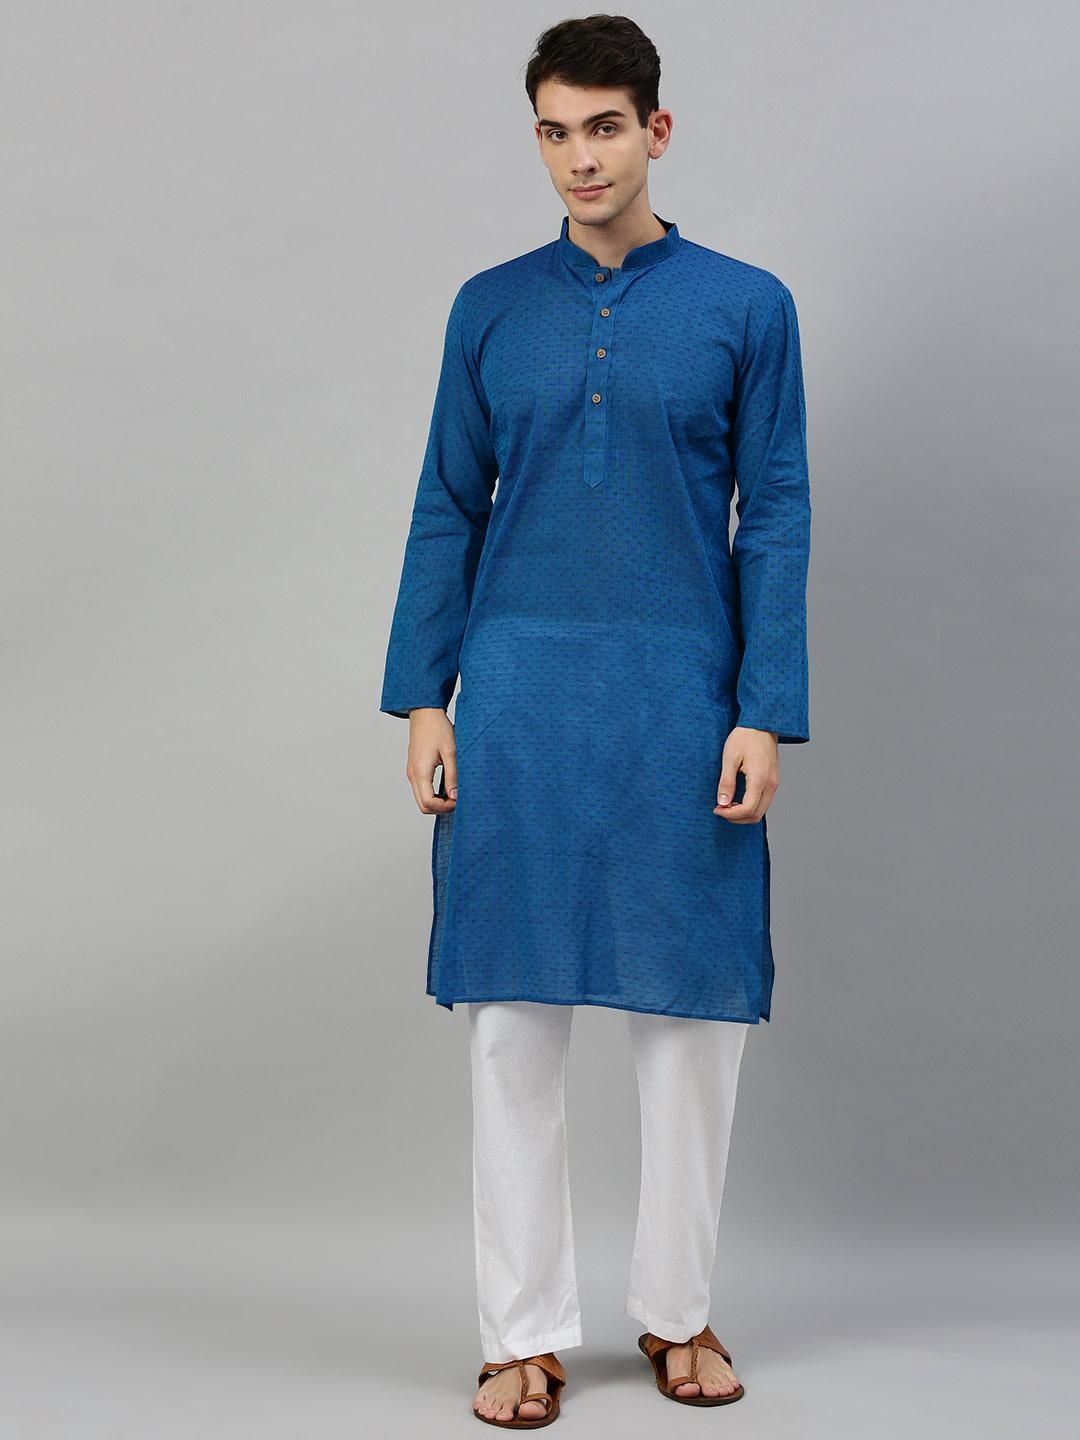 Blue Slim Fit Woven Design Handloom Dobby Cotton Kurta for Men Online ...